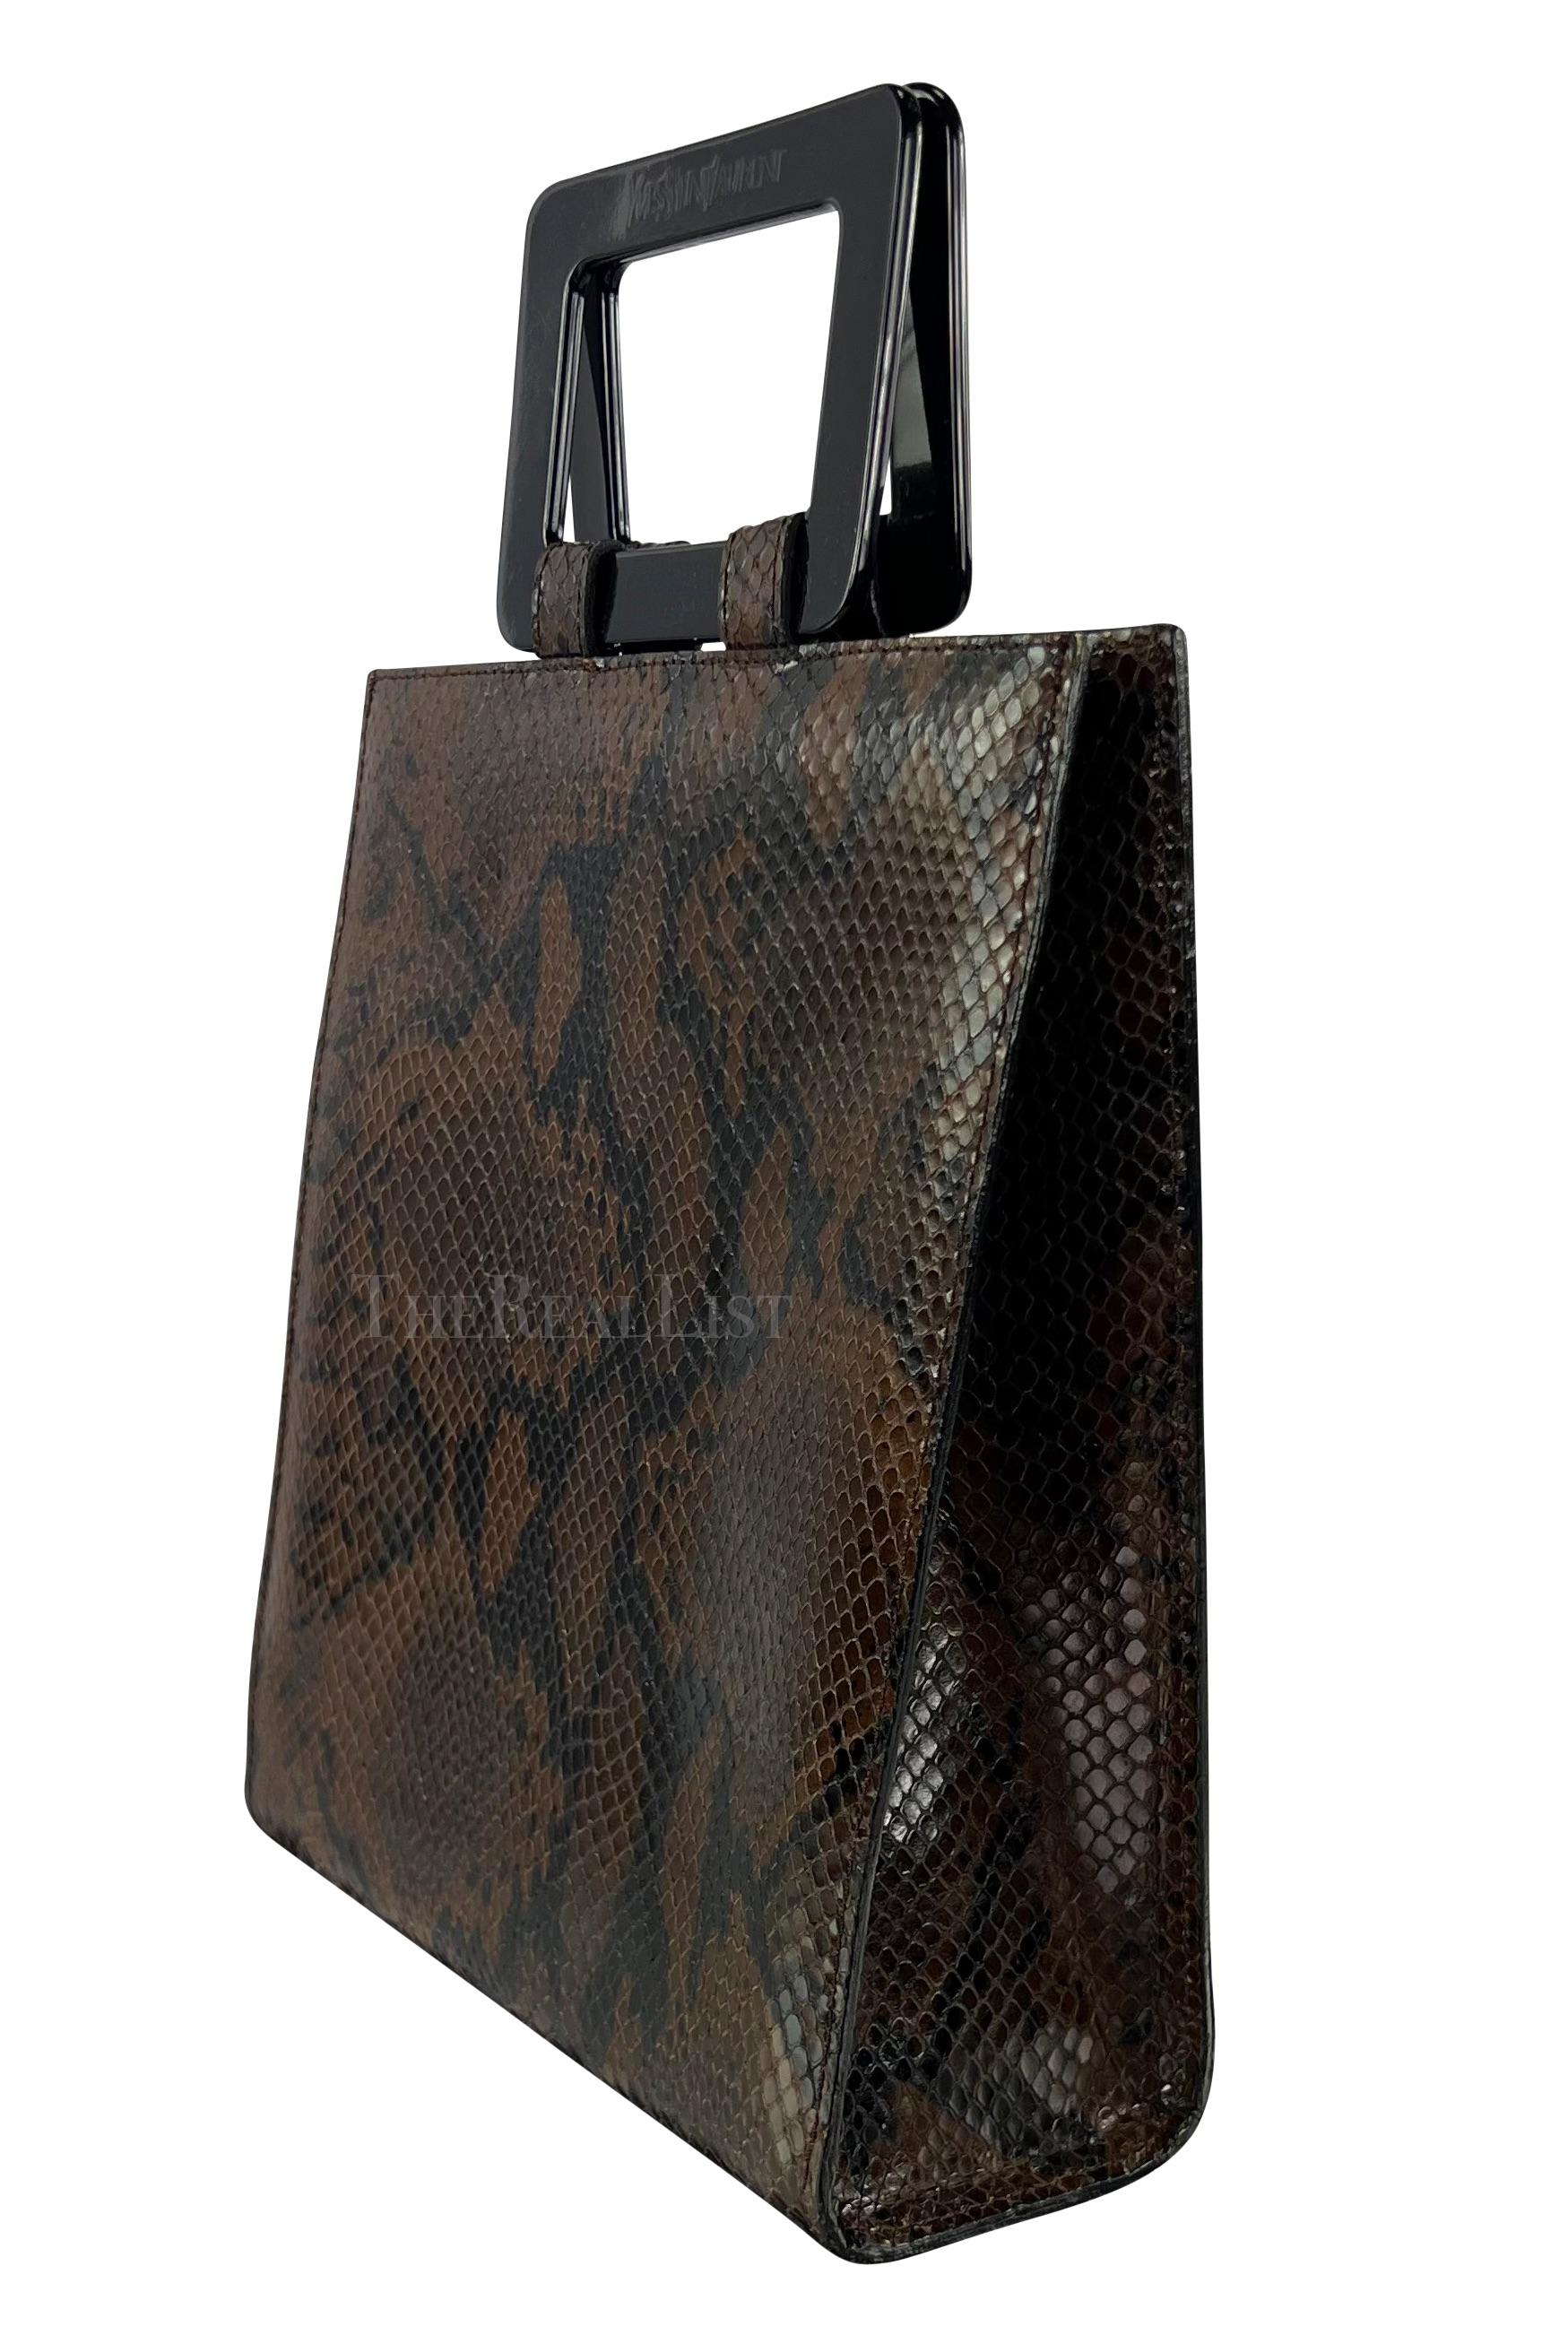 Voici un fabuleux sac à main en python marron Yves Saint Laurent Rive Gauche. Datant des années 1990, le design structuré de ce sac met en valeur la beauté exotique du python marron foncé, ce qui en fait une véritable pièce maîtresse. Les poignées